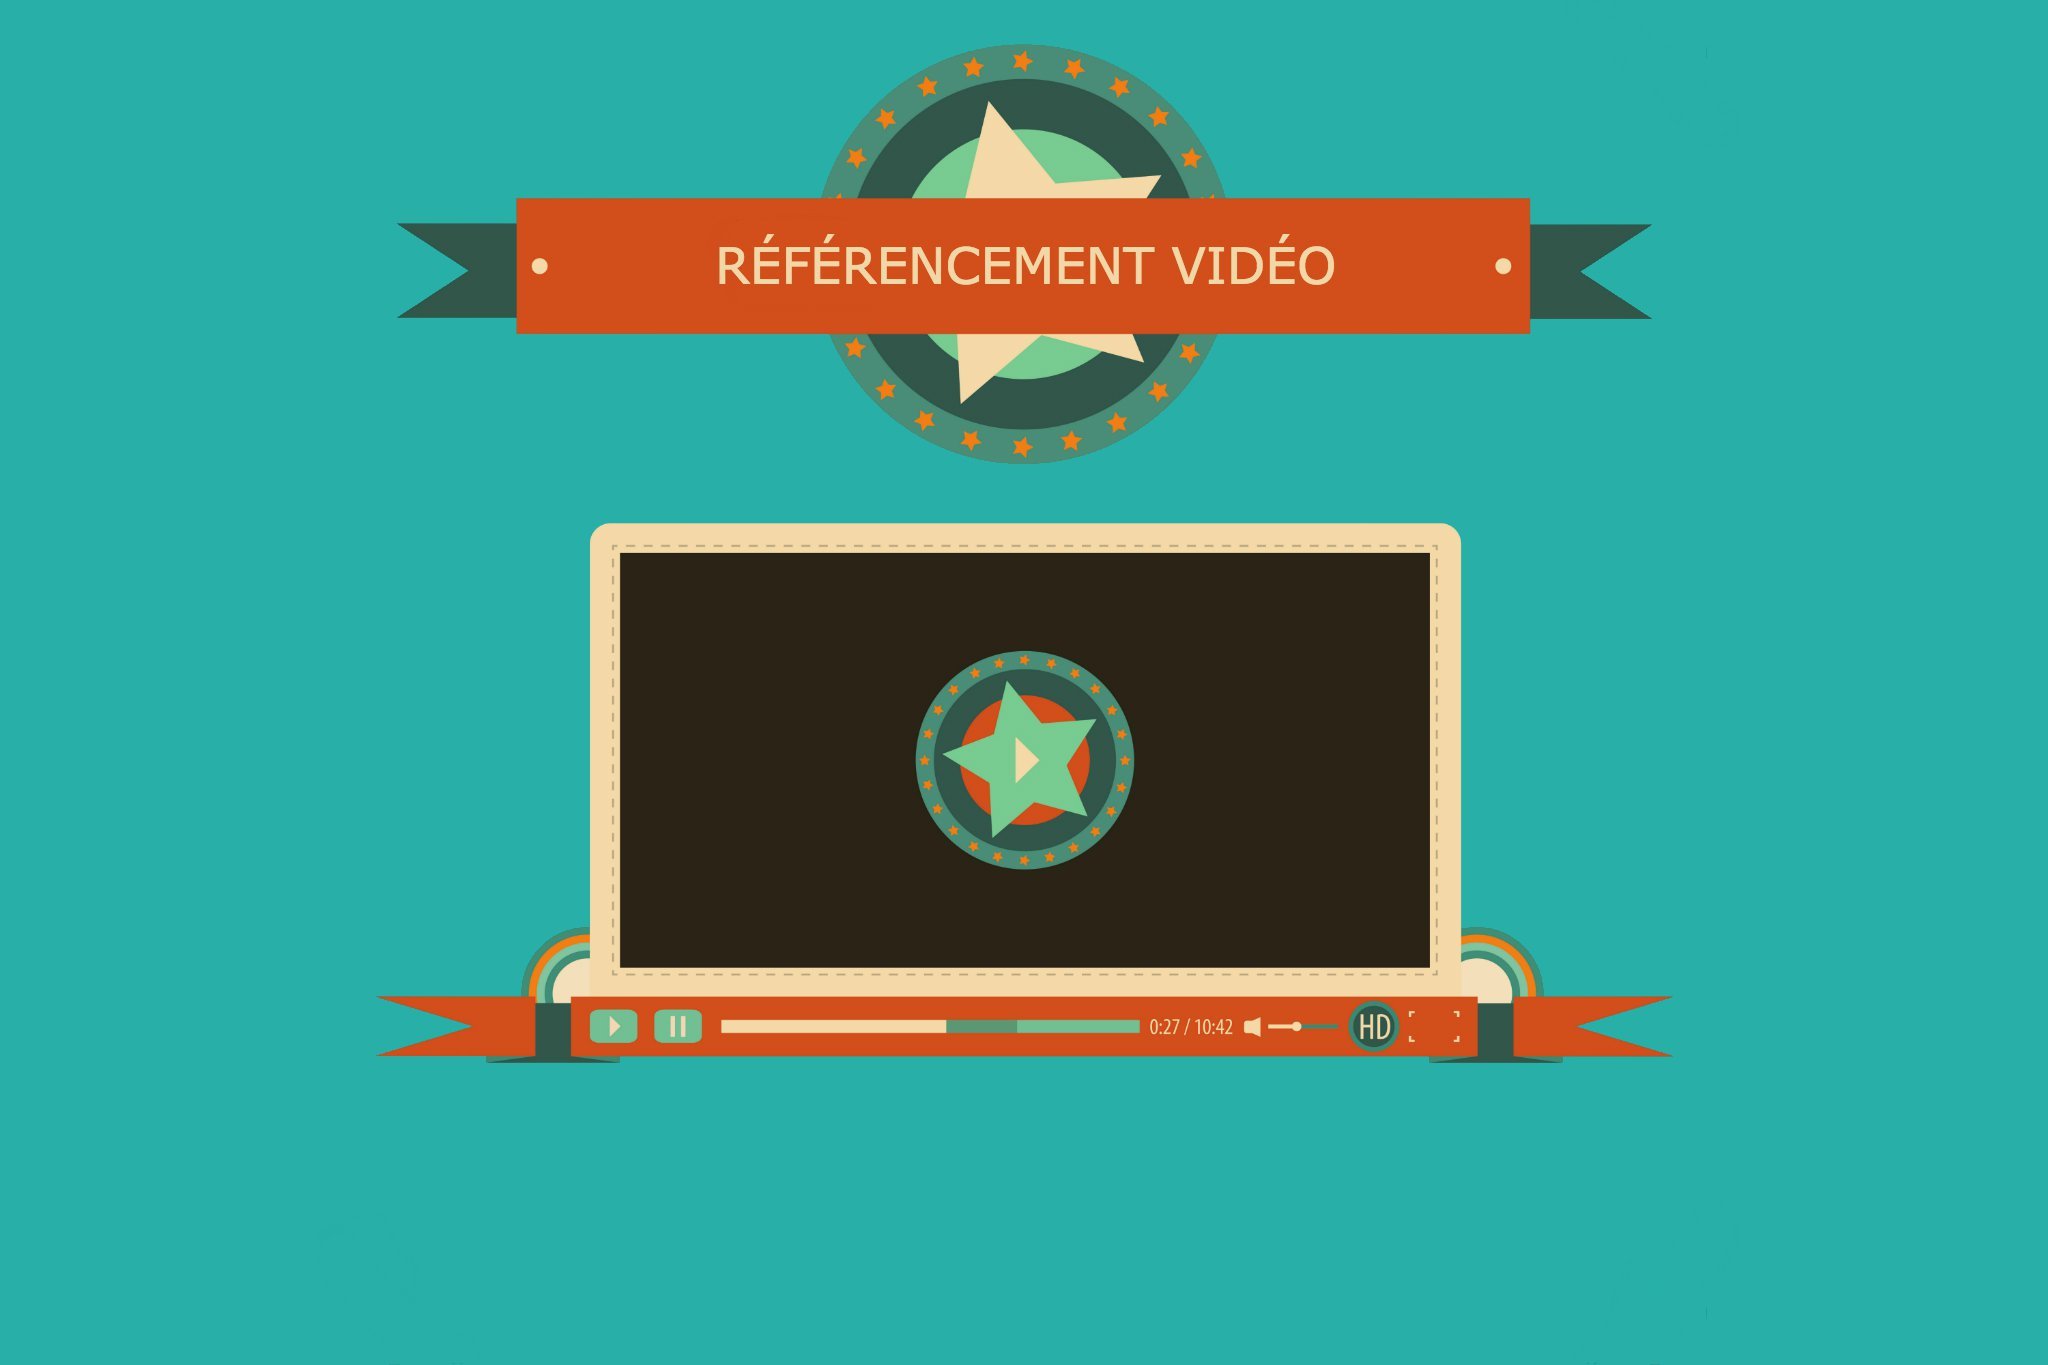 Comment optimiser votre référencement vidéo